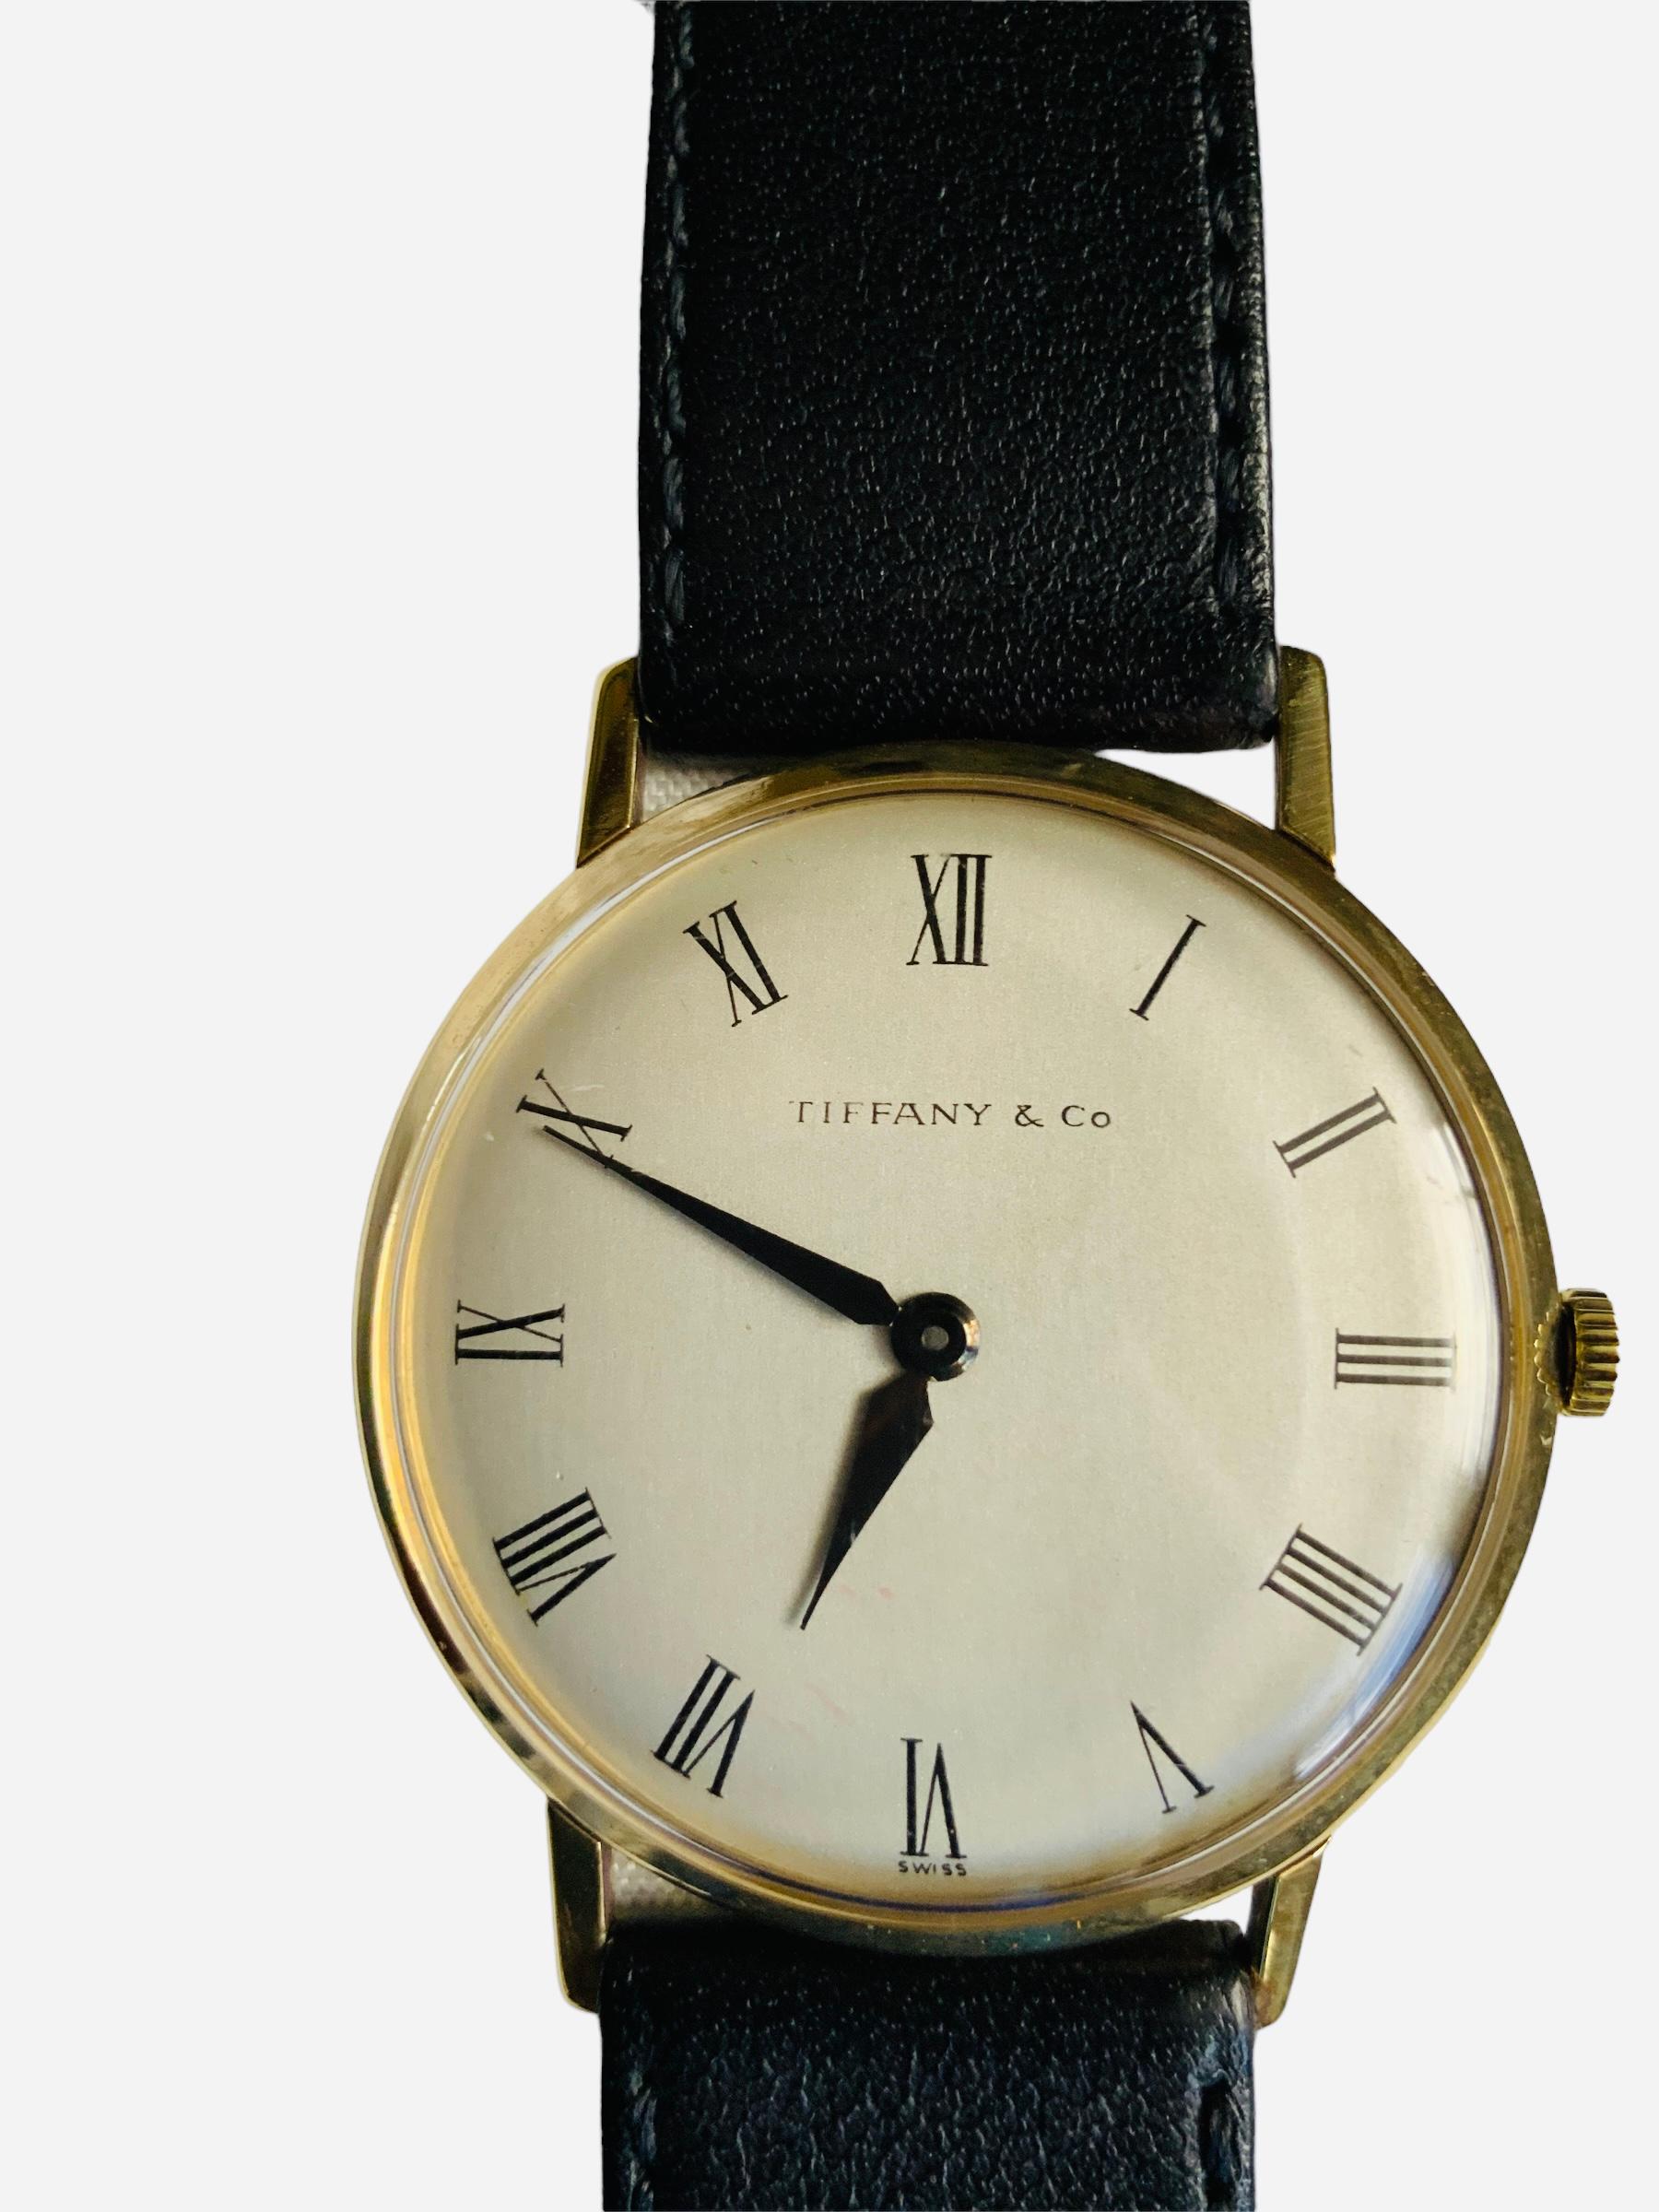 Dies ist eine Tiffany & Company Herrenarmbanduhr. Es zeigt eine 18K Gold runde Gehäuse mit weißlich graue Farbe Zifferblatt, das römische Ziffern und schwarze Farbe Stunde / Minute Zeiger hat. Unterhalb der 6-Uhr-Position ist sie mit dem Schweizer